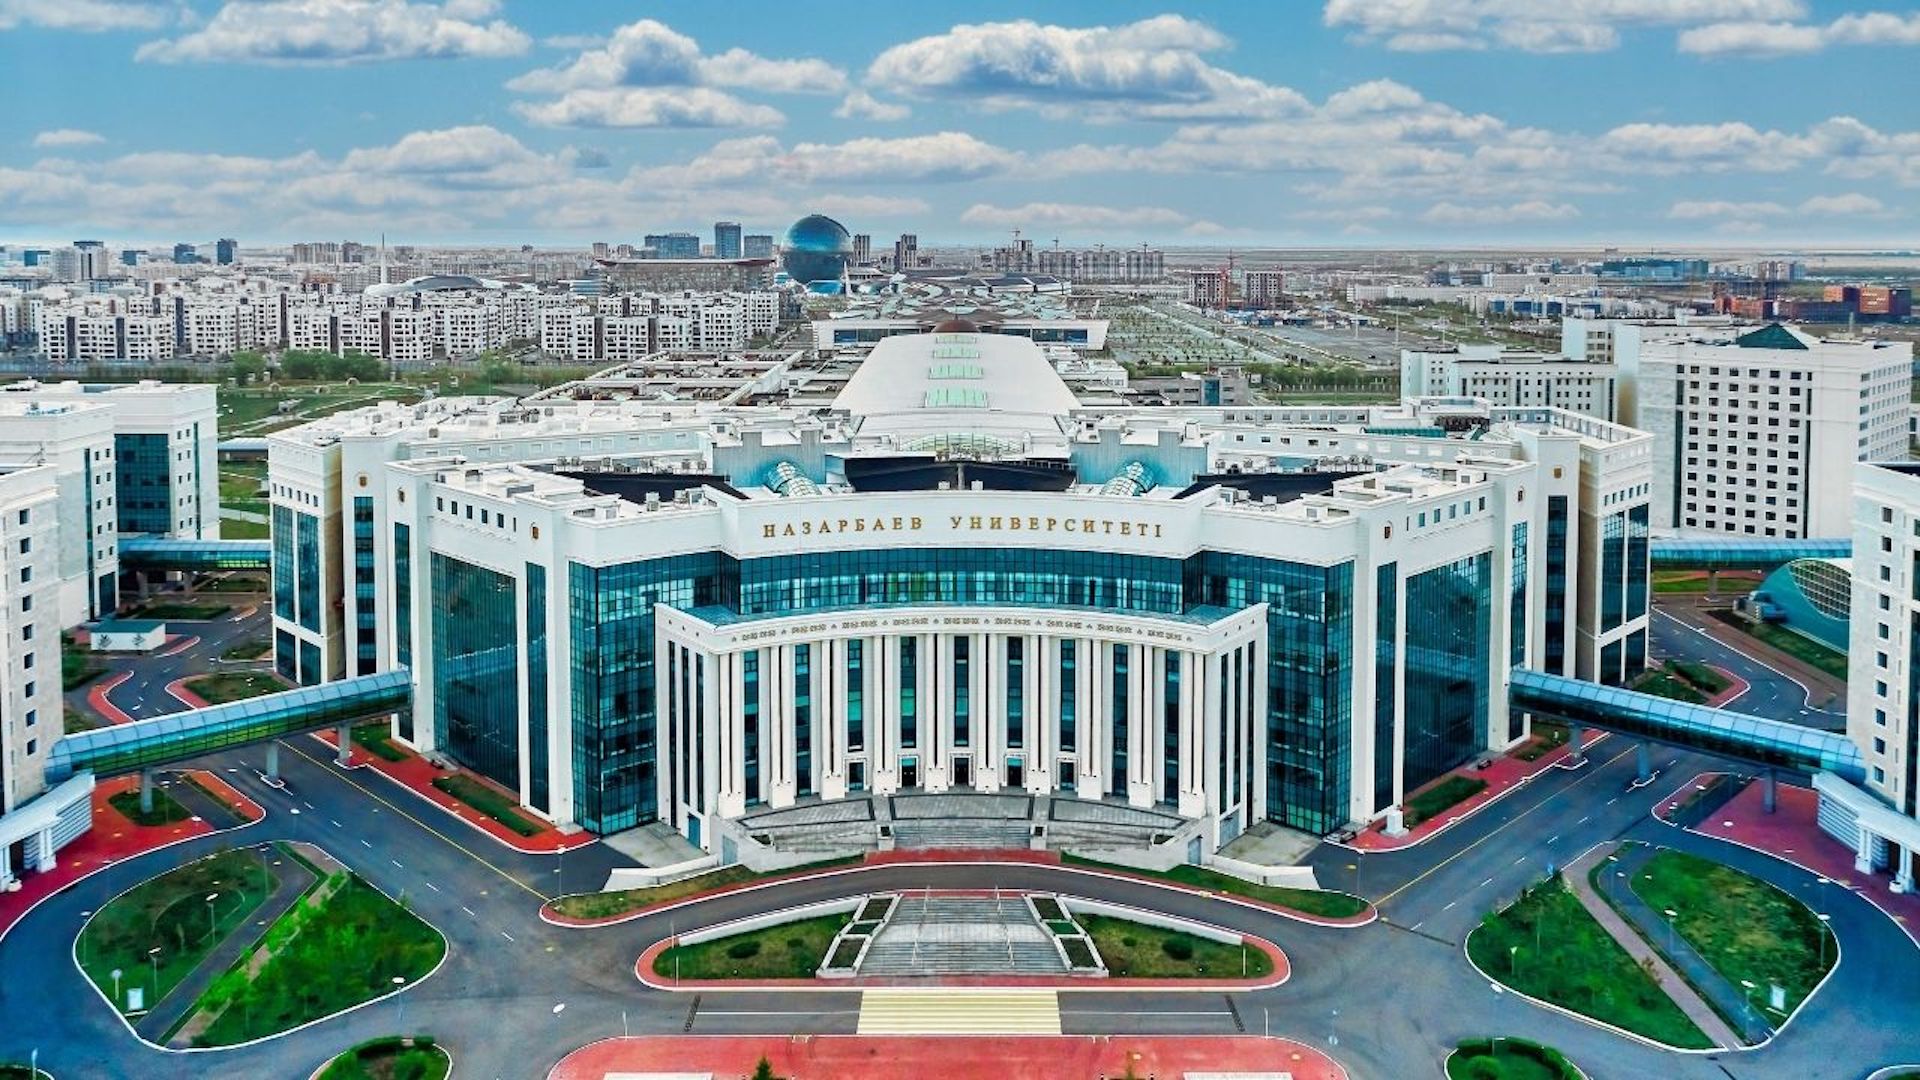 Нужен ли Назарбаев Университет и НИШ в Казахстане, рассказал Аймагамбетов